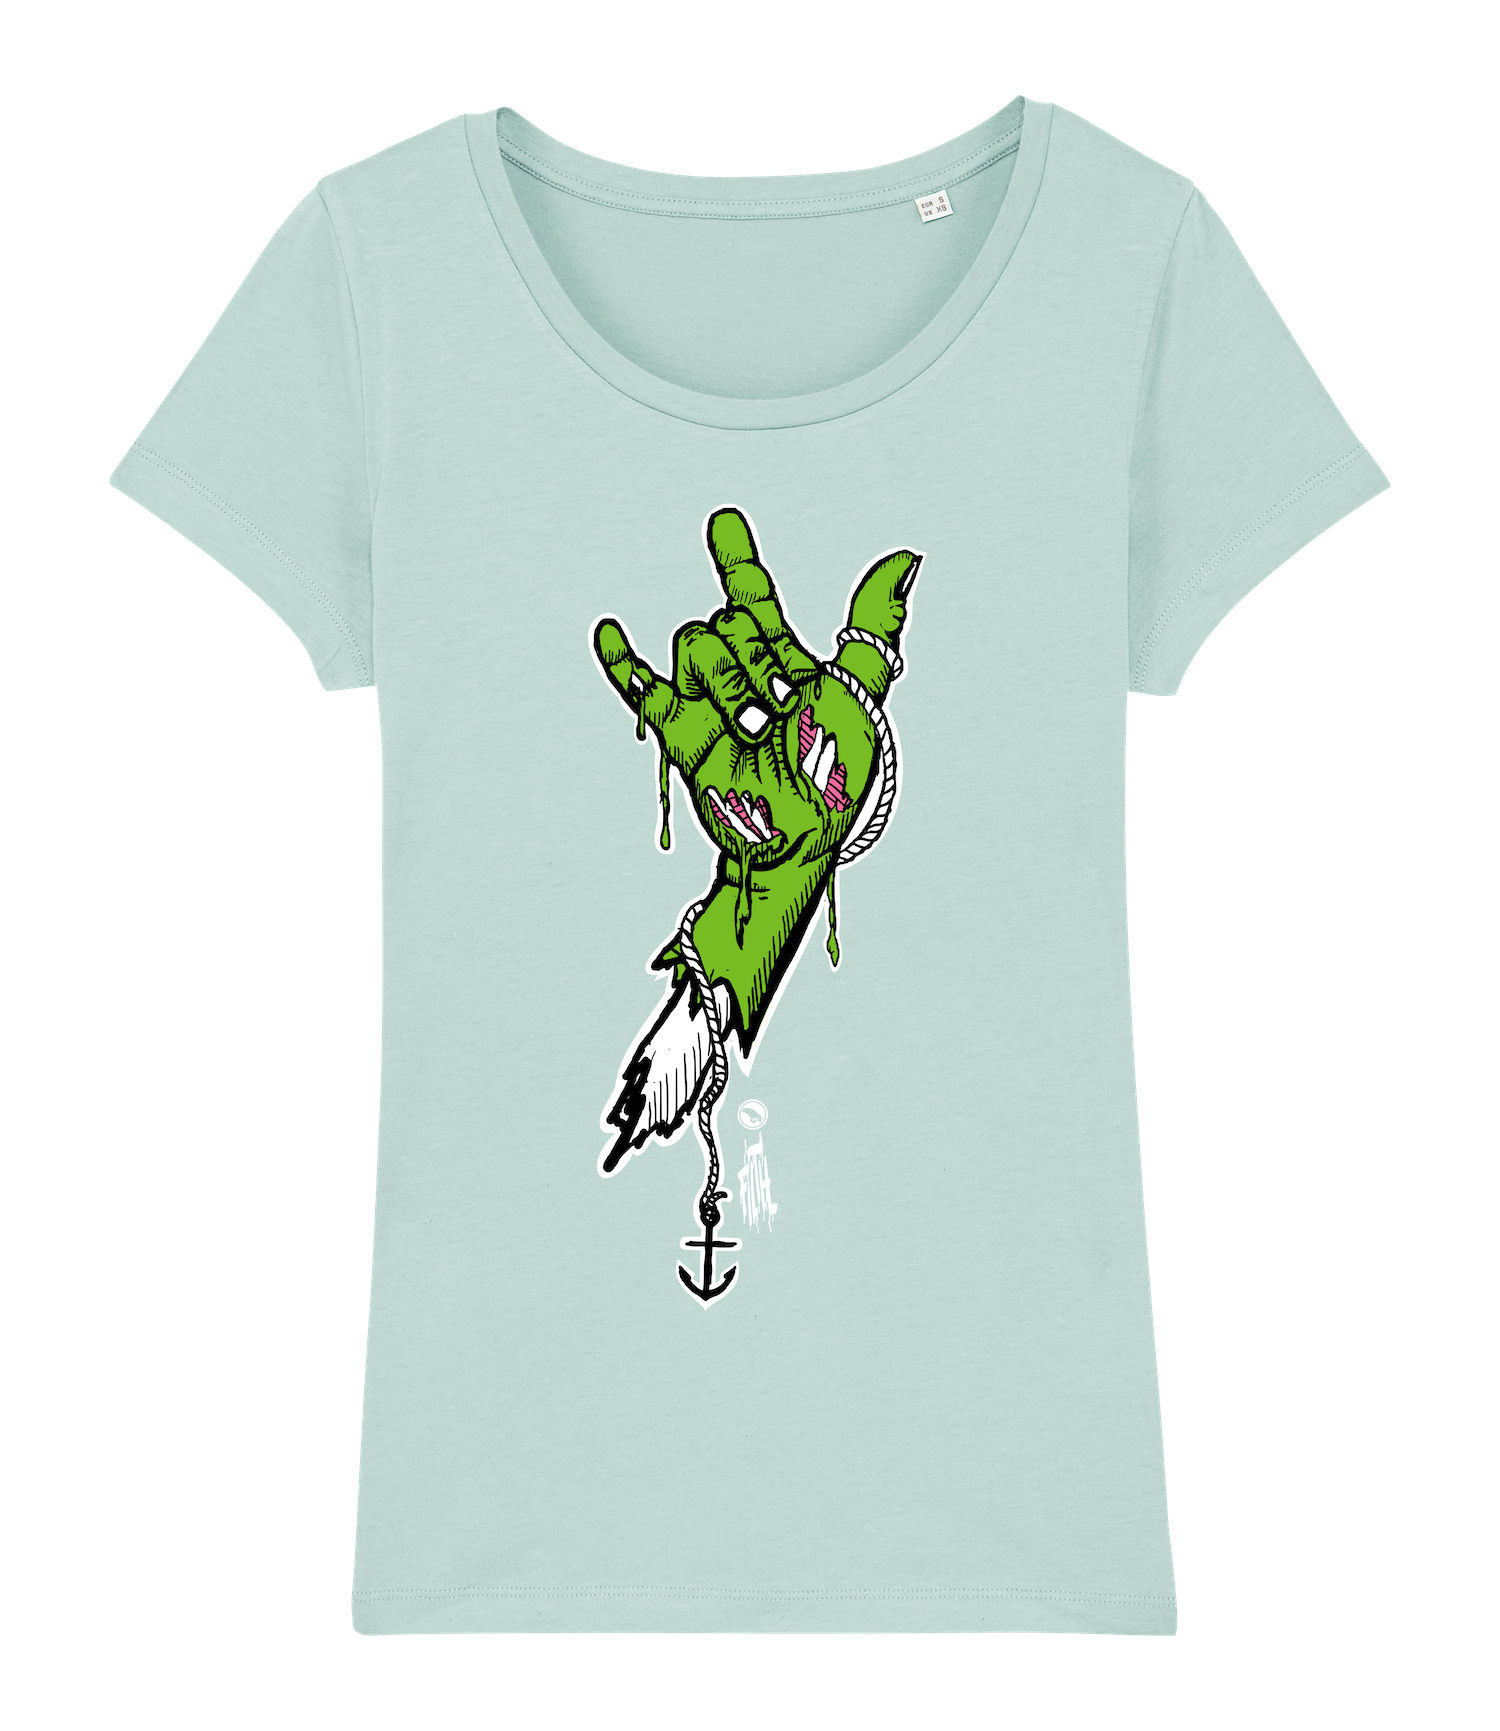 Surf t-shirt women, green rock hand on caribbean blue T-shirt